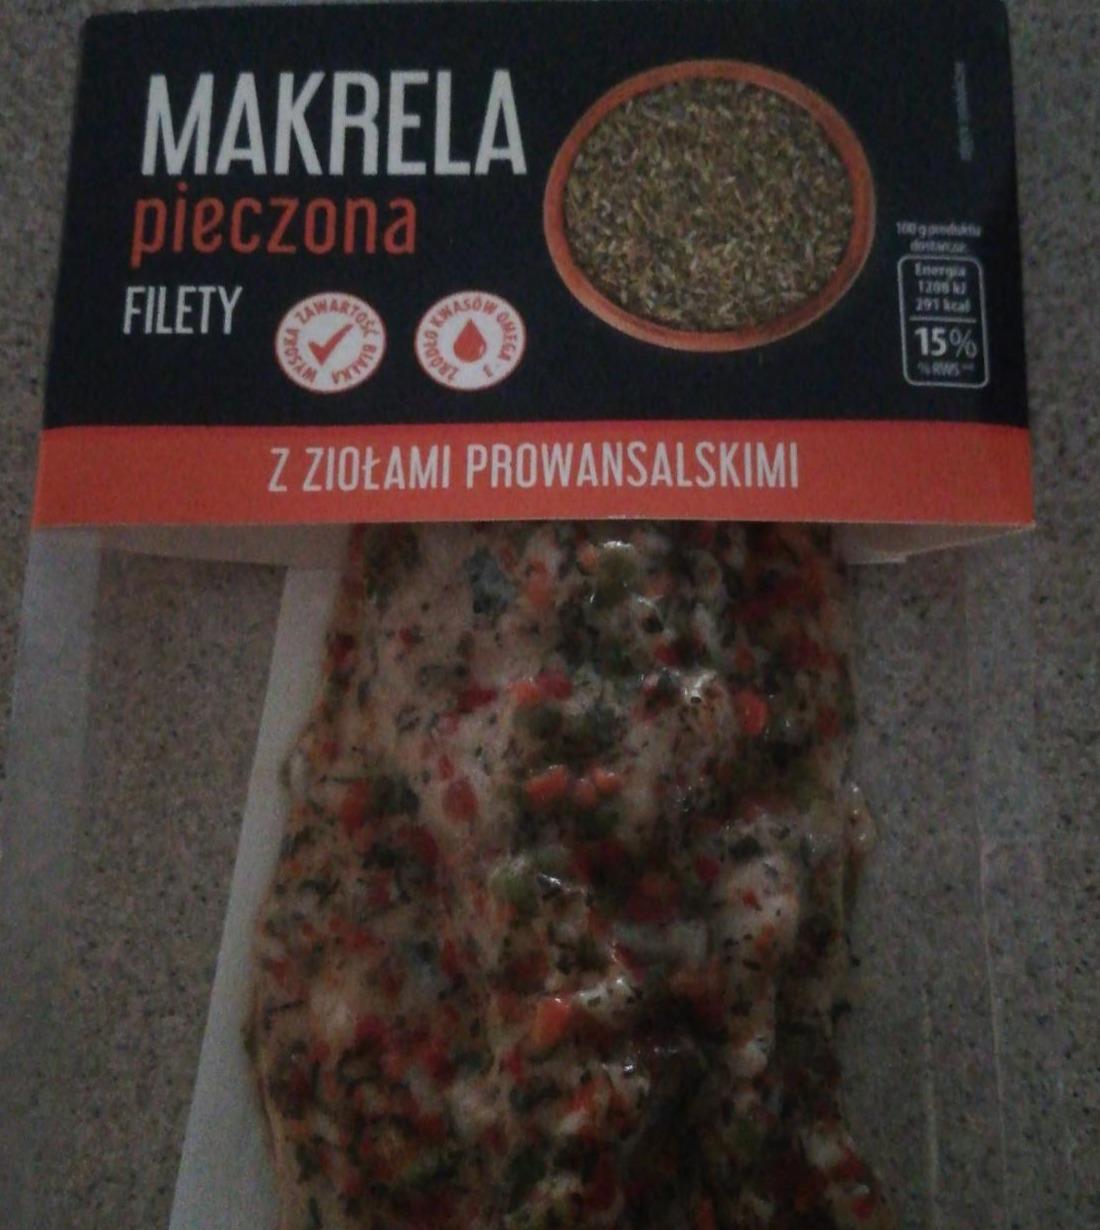 Zdjęcia - Makrela pieczona filety z ziołami prowansalskimi